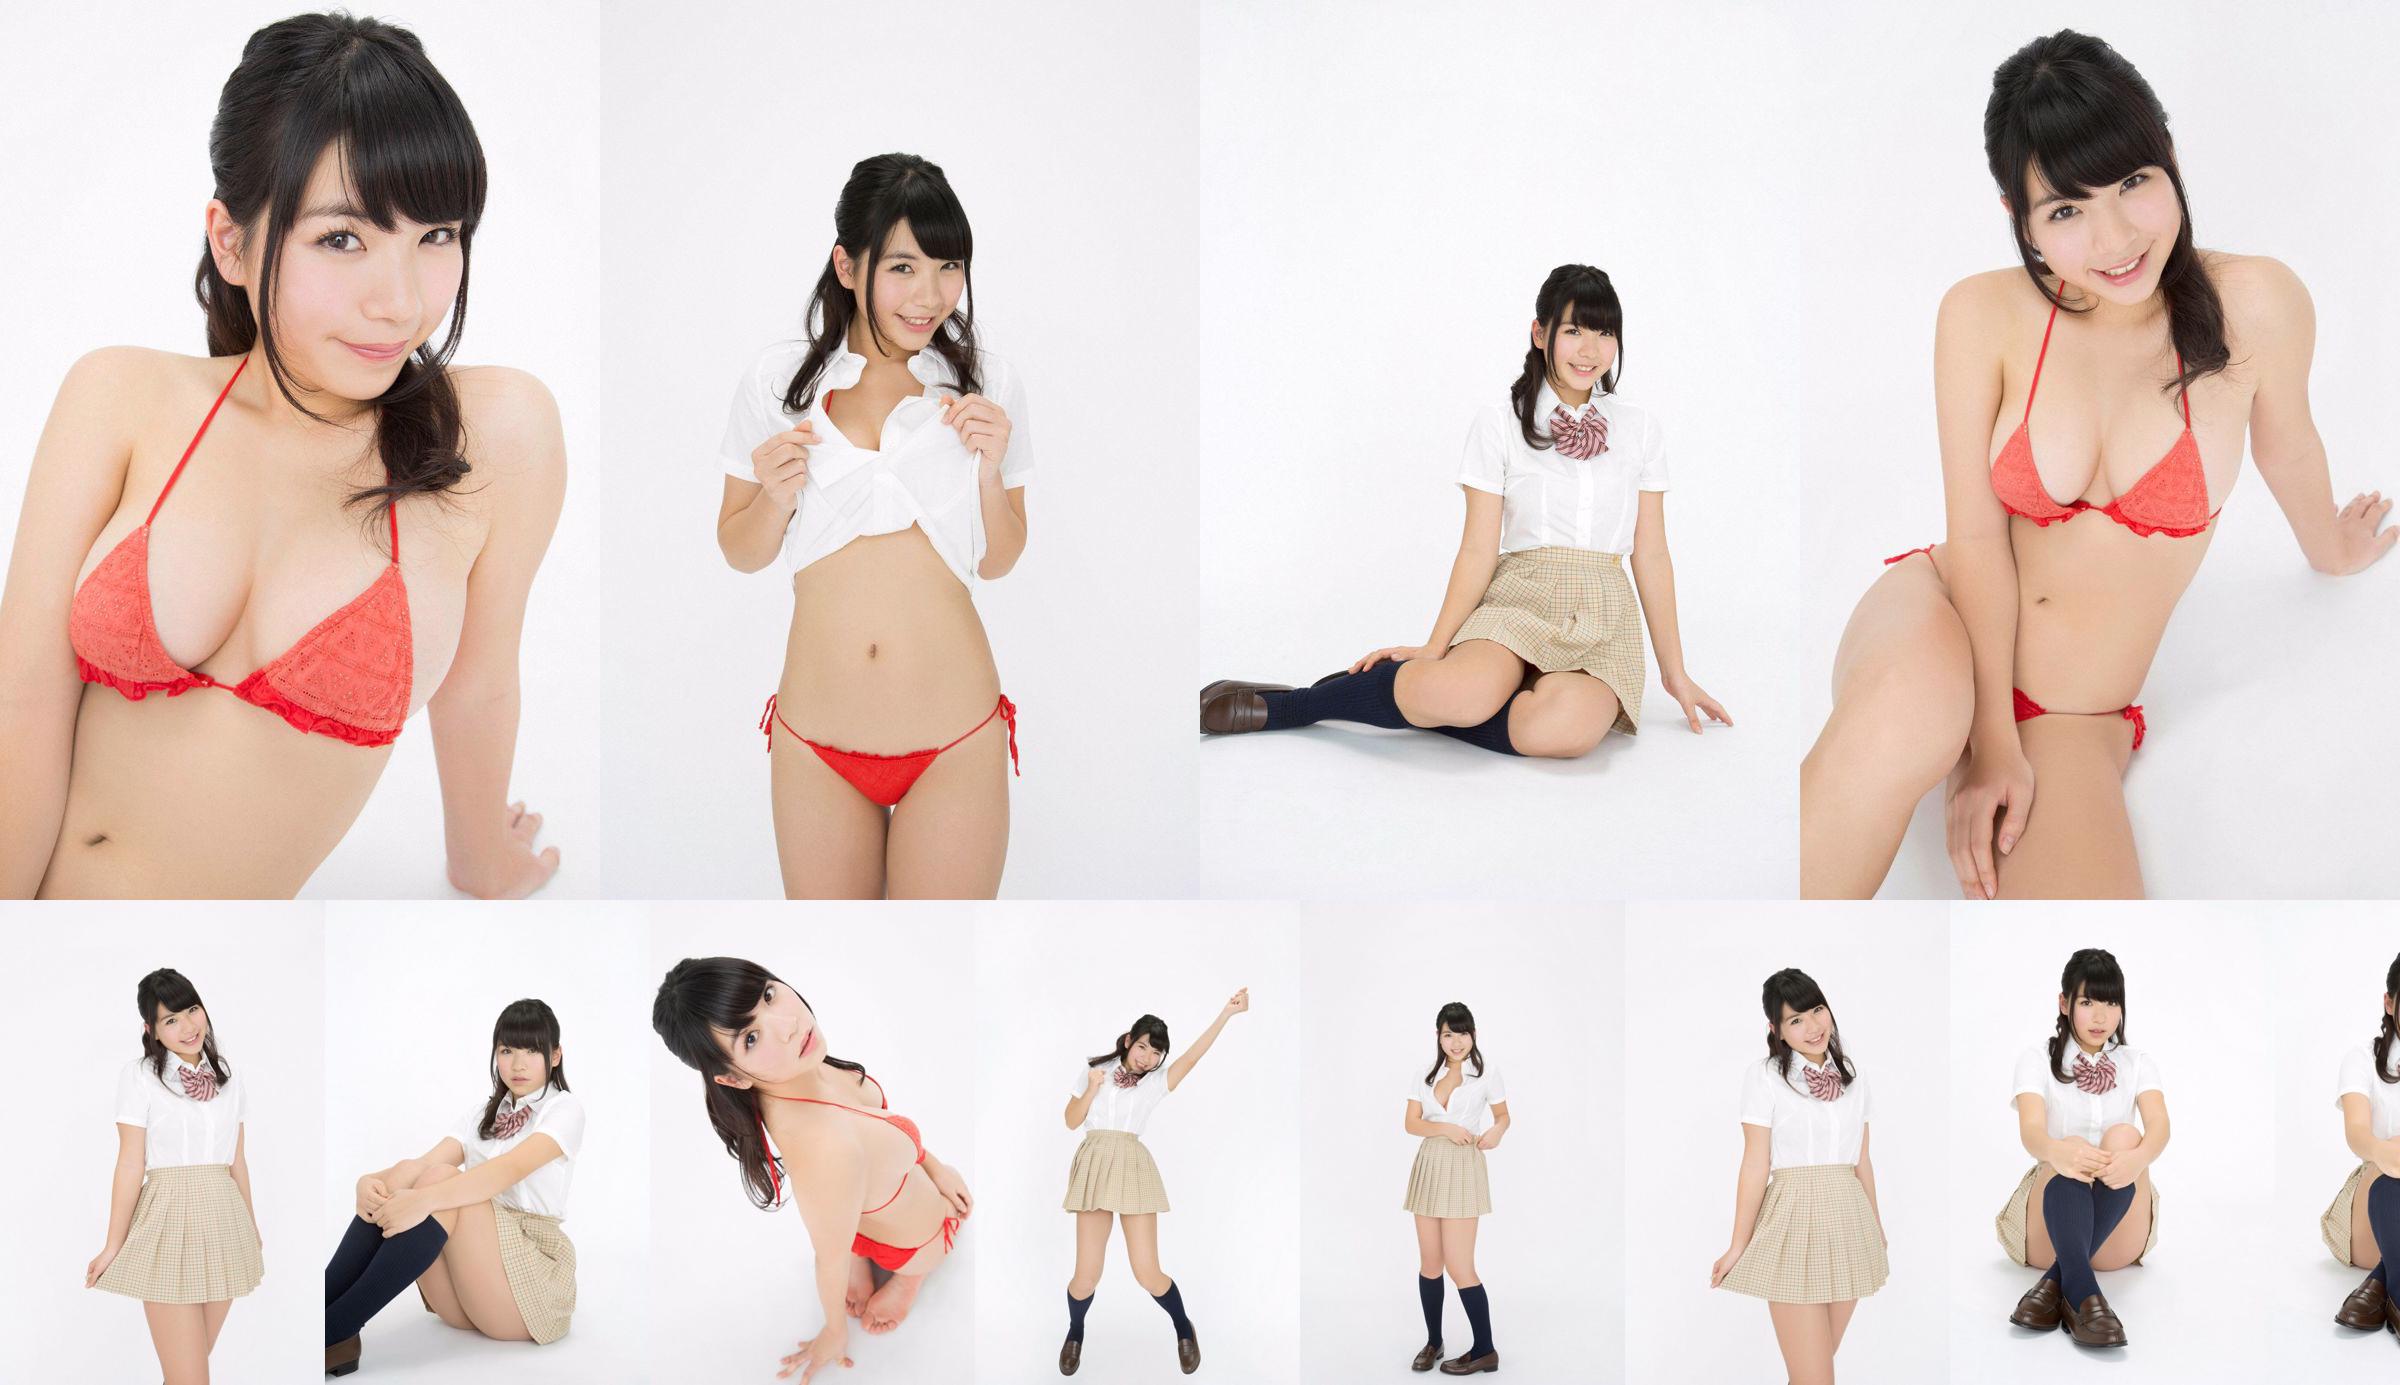 Jun Serizawa / Jun Serizawa "Một nữ sinh trung học năng động, lùn nhất Nhật Bản グ ラ ド ル nhập học! No.e6a5e8 Trang 6